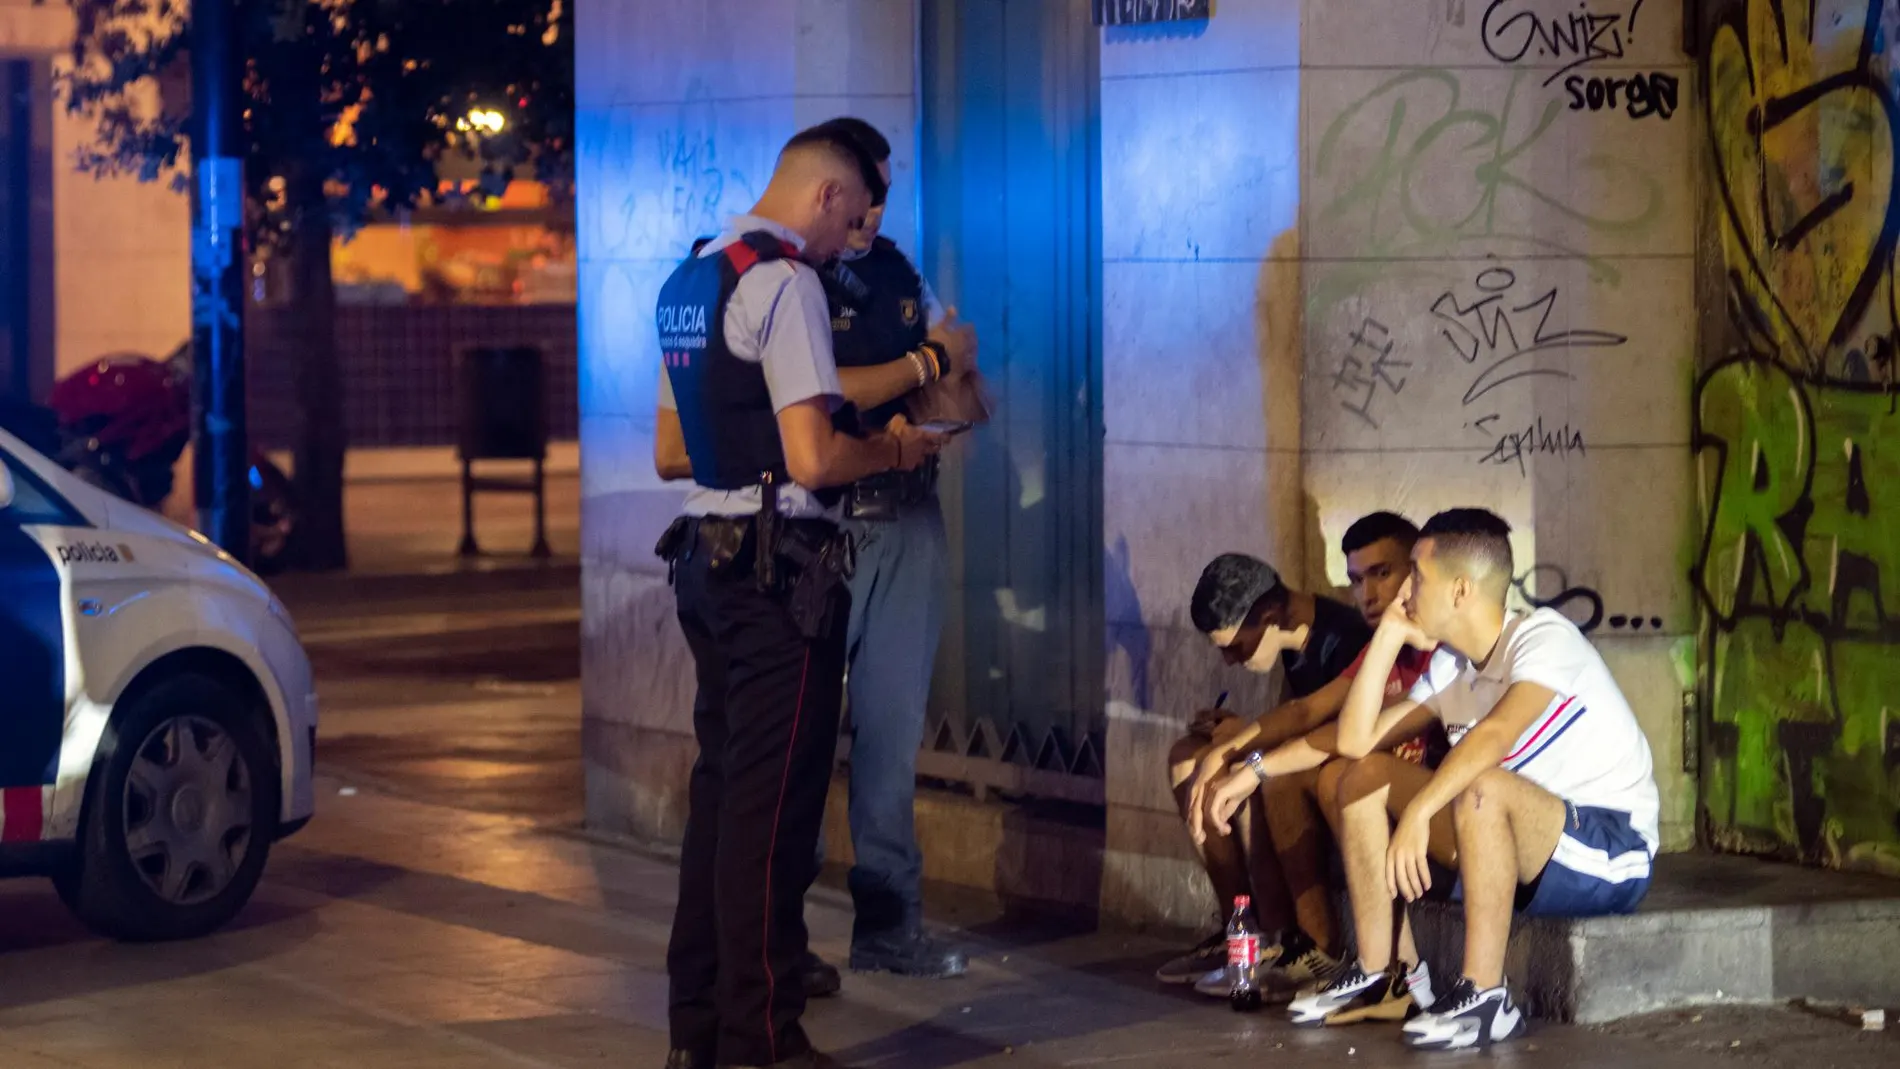 Dos agentes de los Mossos d'Esquadra proceden a identificar a un grupo de jóvenes en Barcelona durante la noche